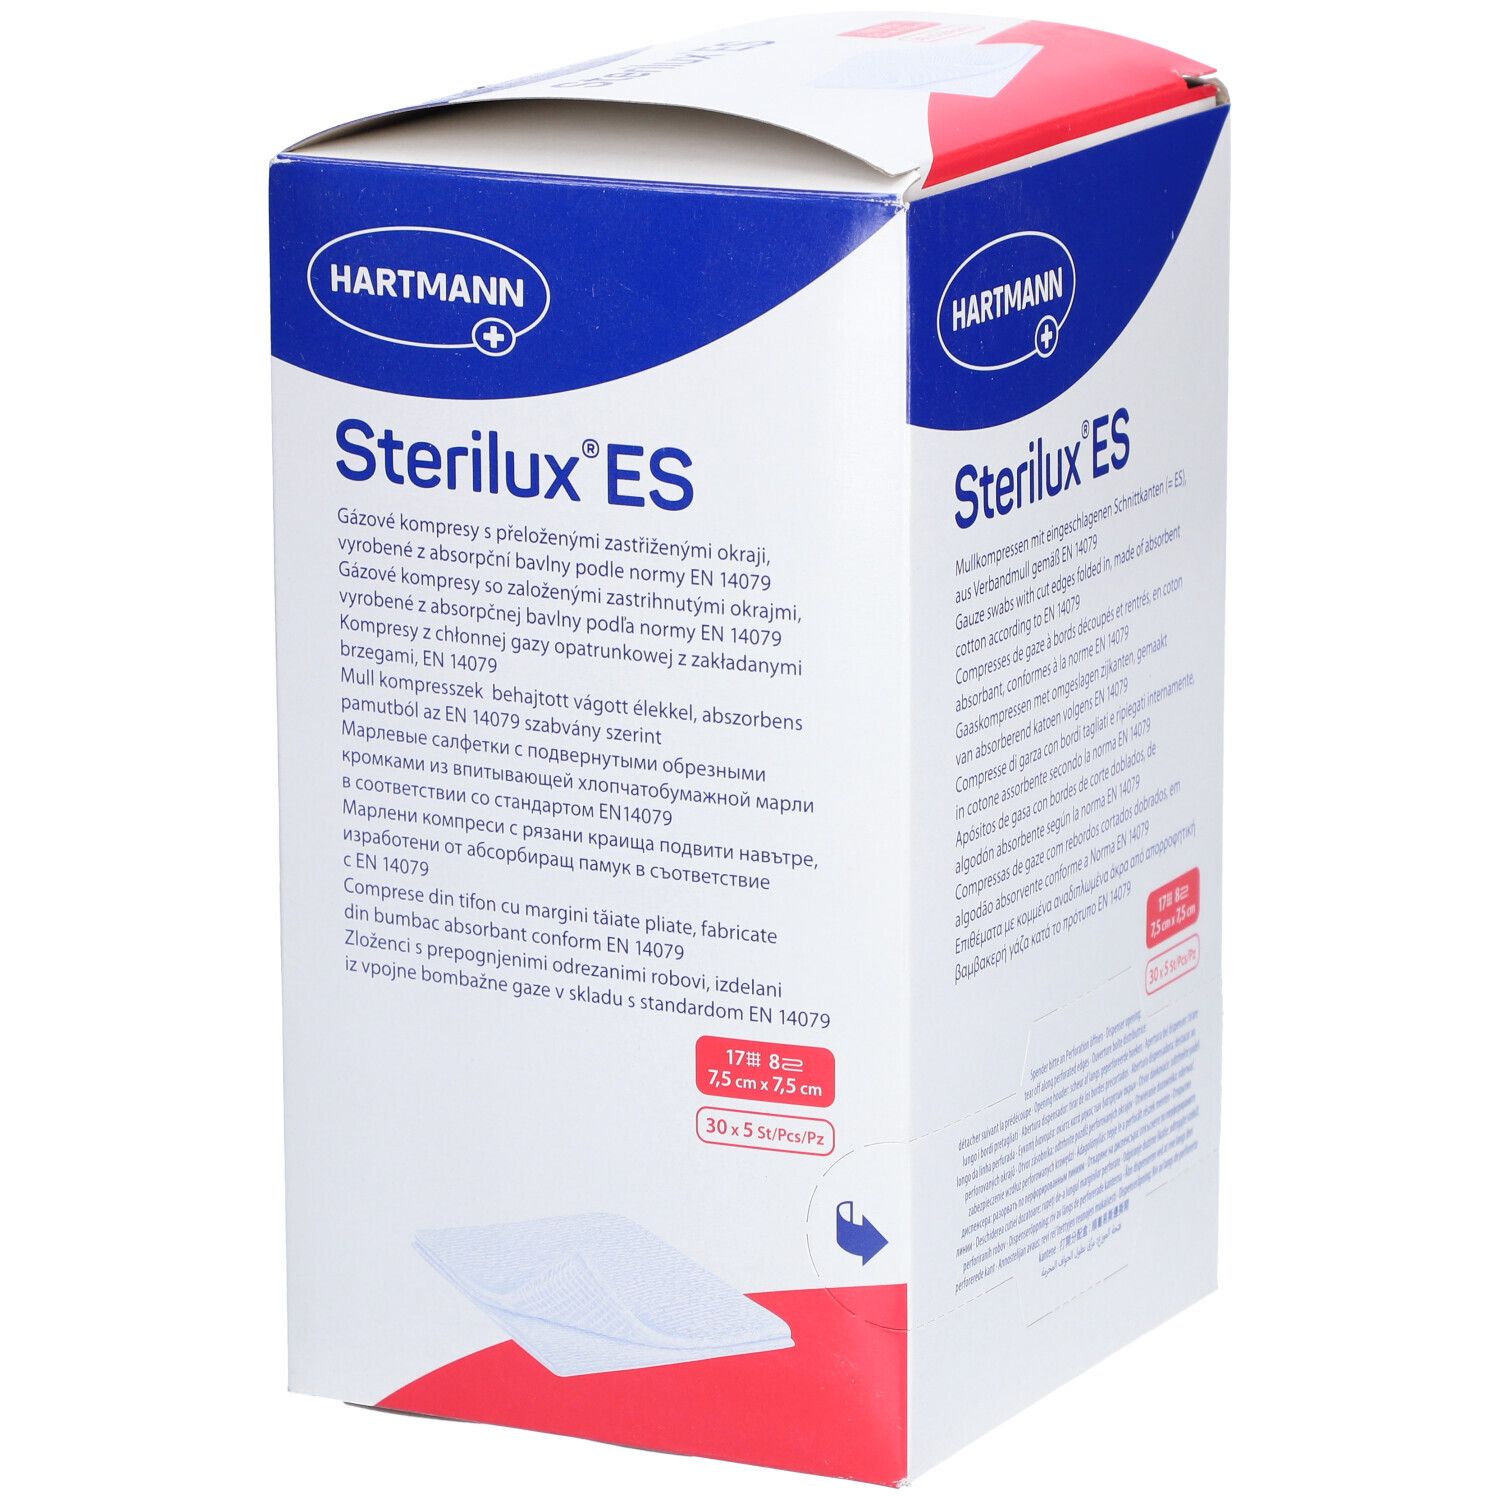 Sterilux® ES-Kompressen steril 8fach 7,5 x 7,5 cm